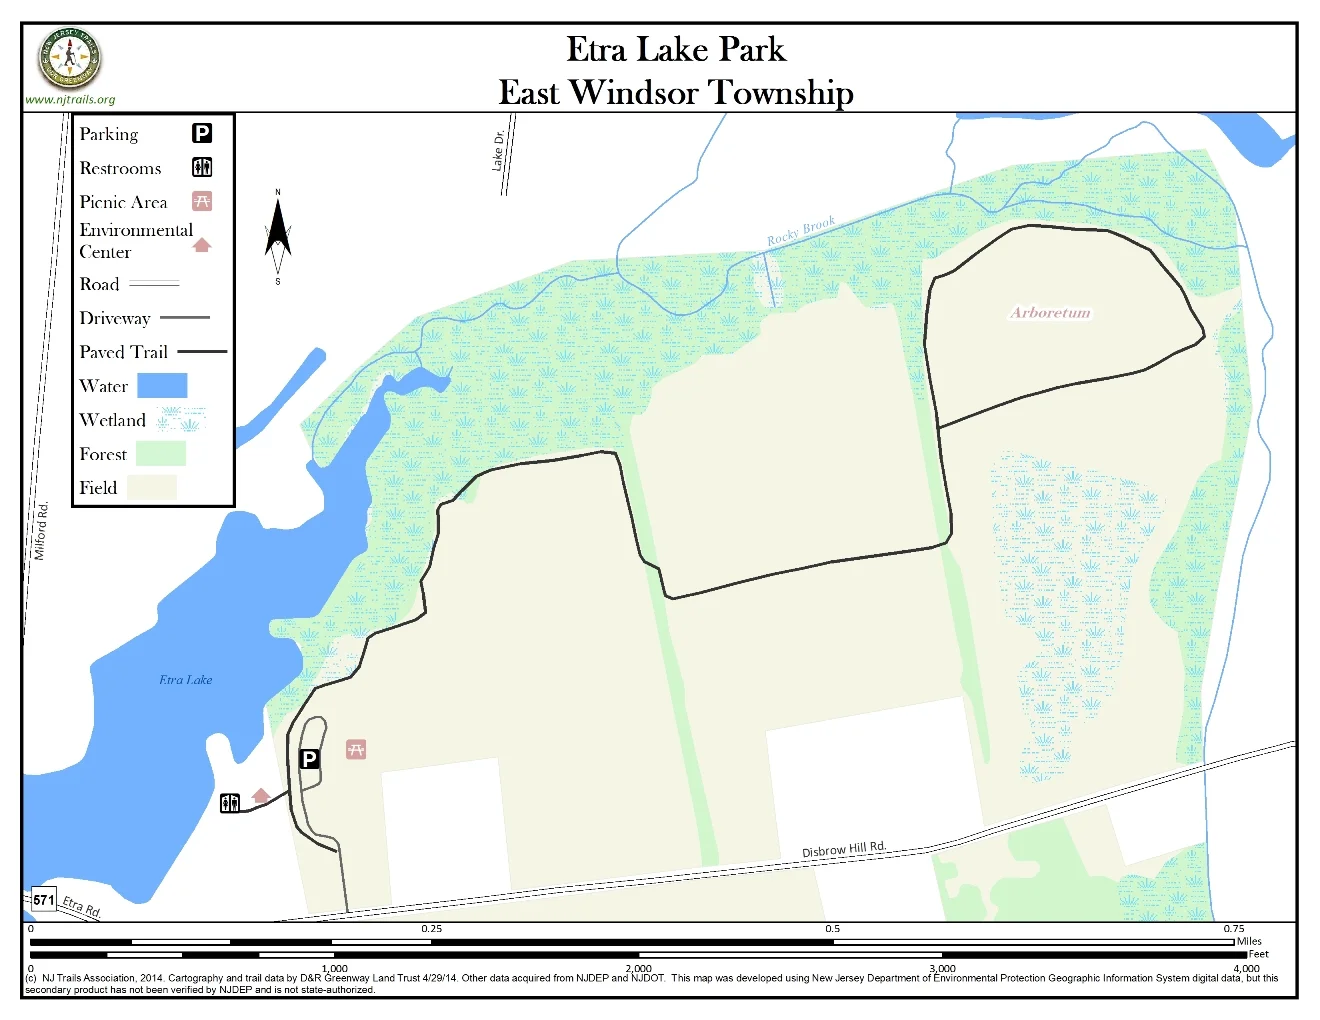 Etra Lake Park